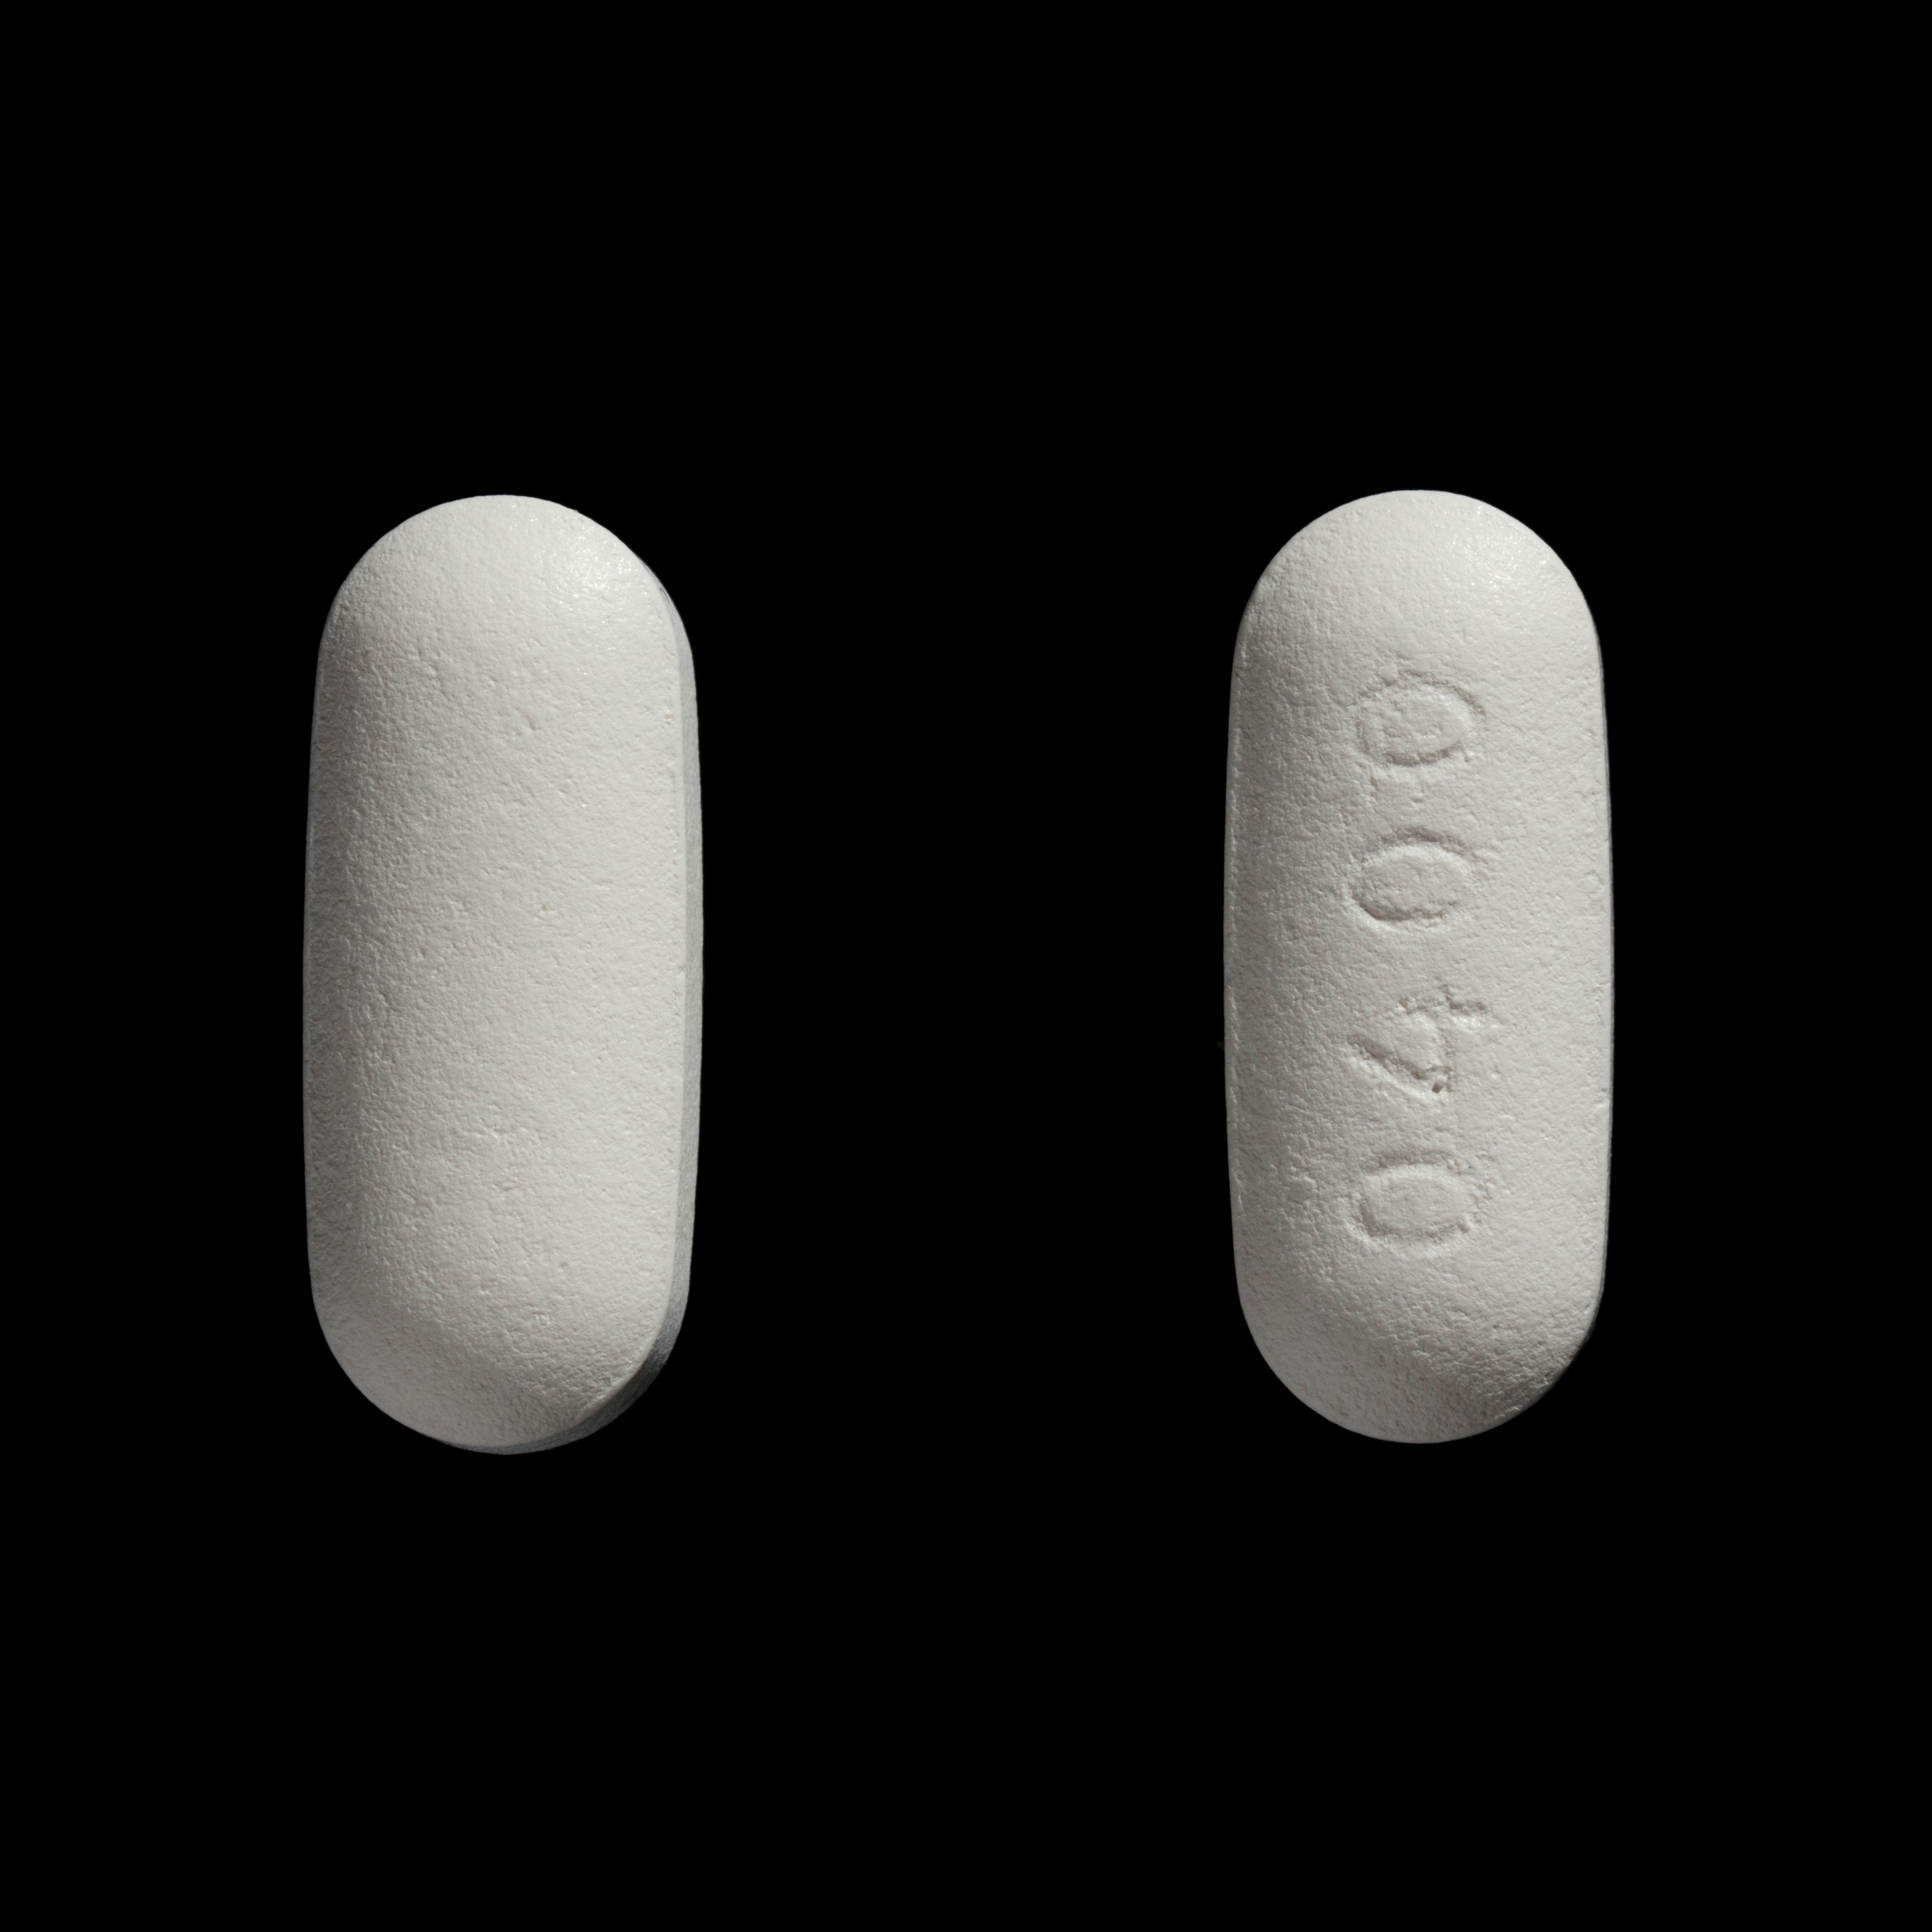 Quetiapin ratiopharm 400 mg forðatöflur